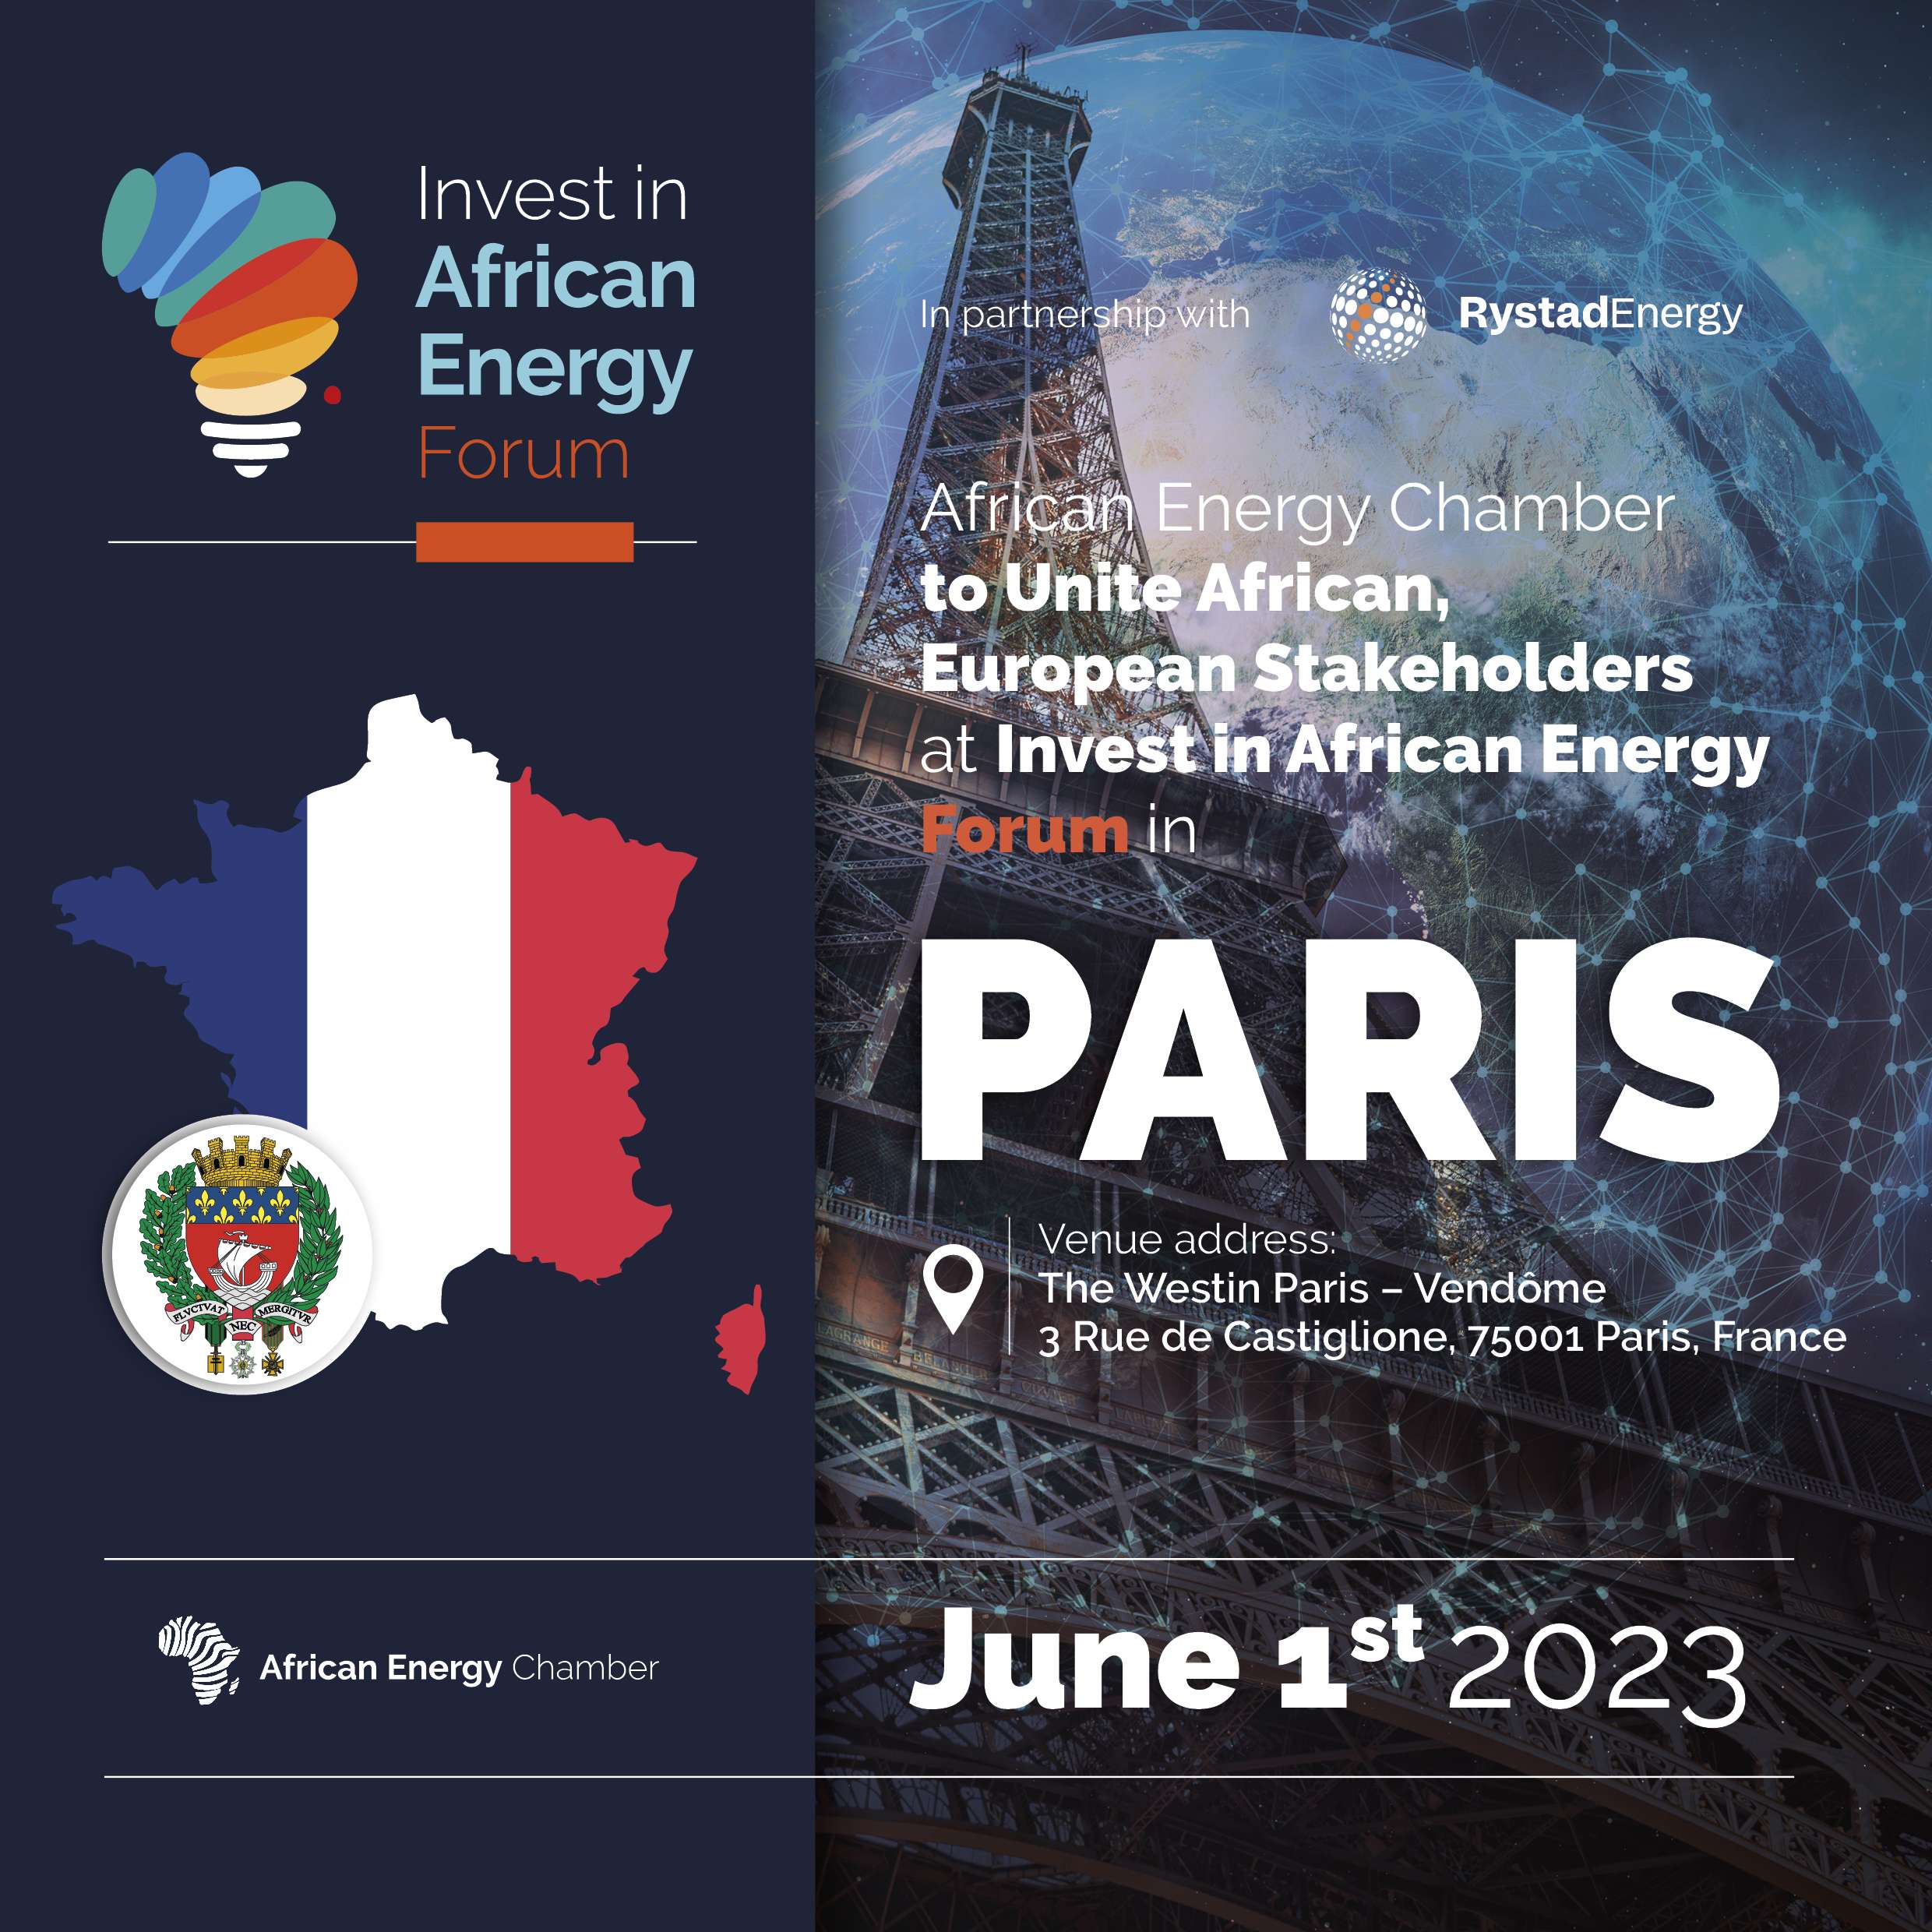 Le Forum Invest in African Energy Paris, organisé par la Chambre africaine de l’énergie (AEC) se tiendra le 1er juin 2023 à Paris